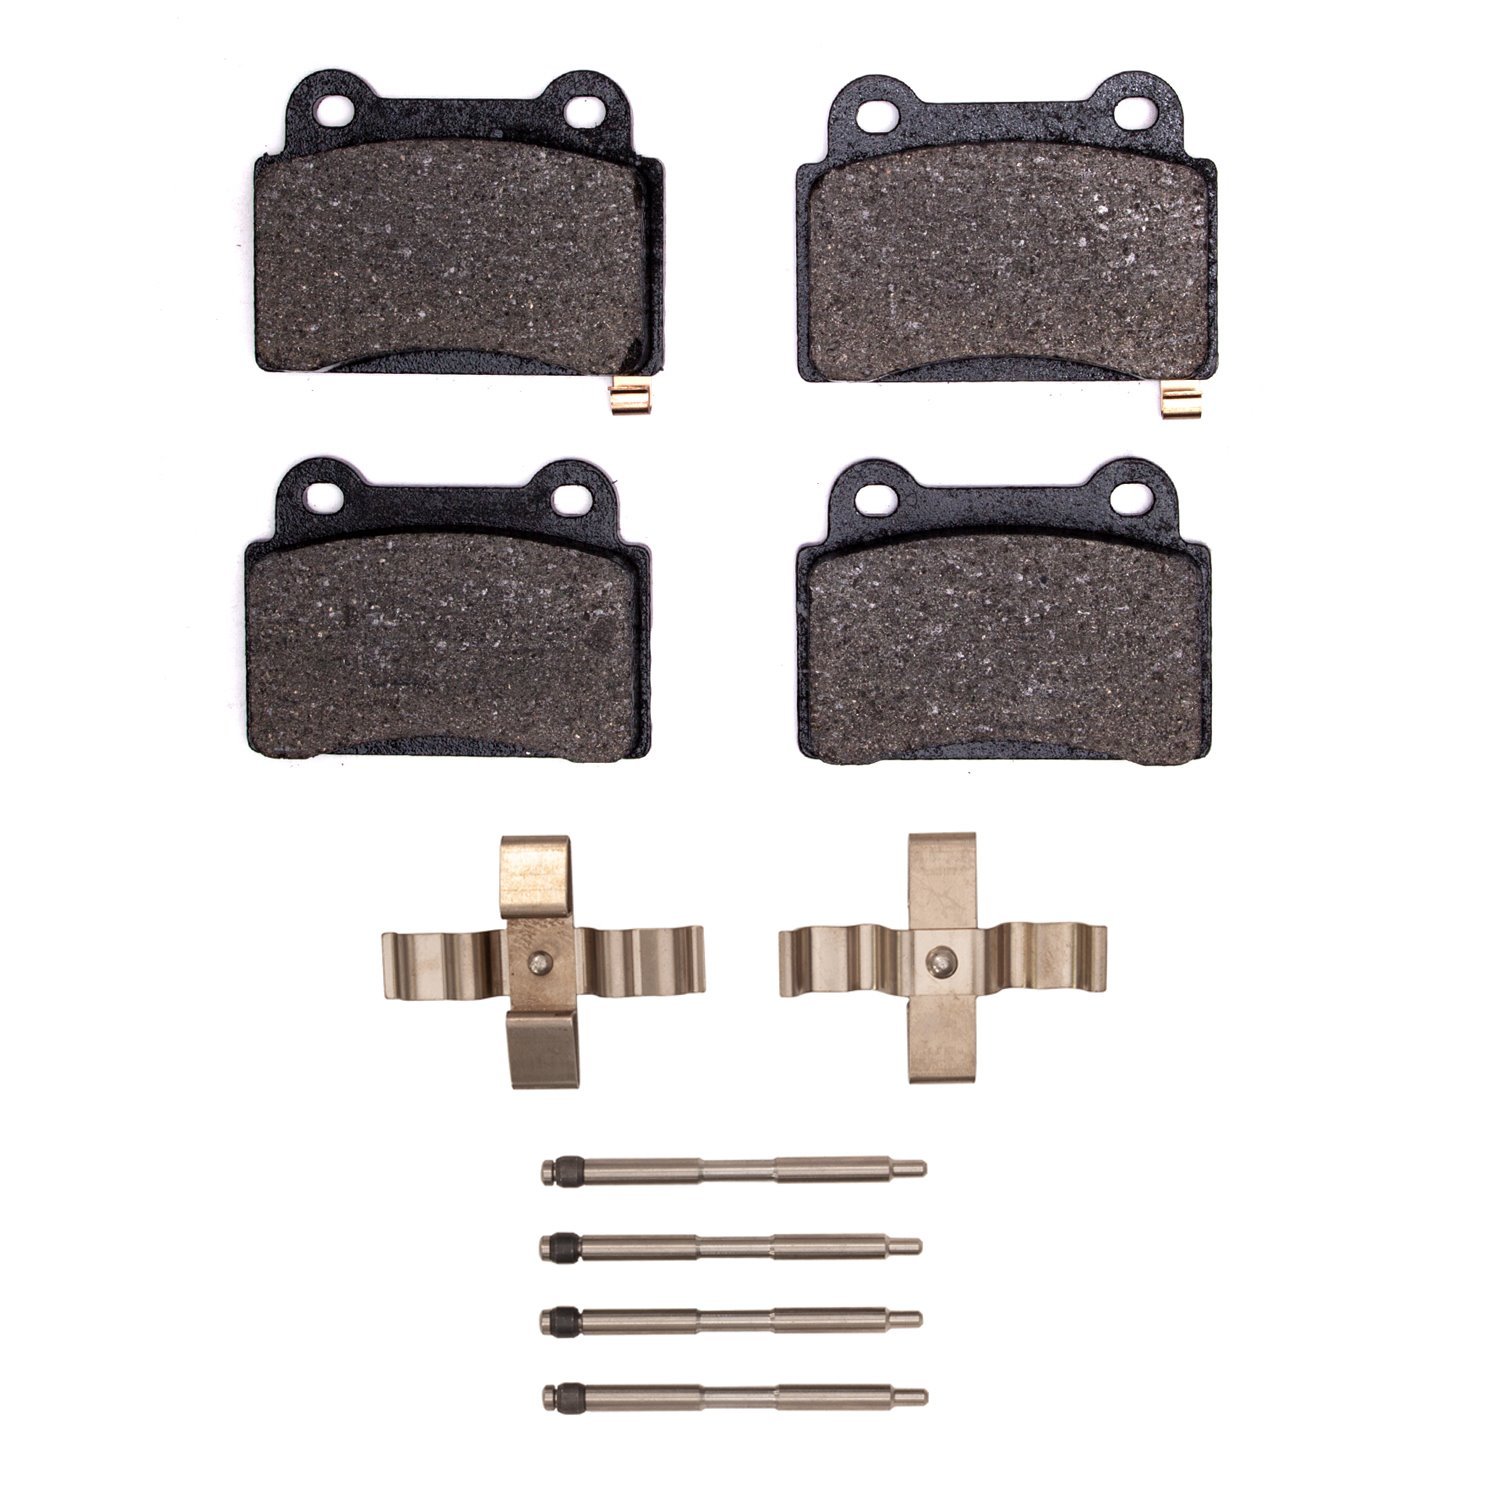 1551-1368-01 5000 Advanced Low-Metallic Brake Pads & Hardware Kit, 2008-2015 Mitsubishi, Position: Rear